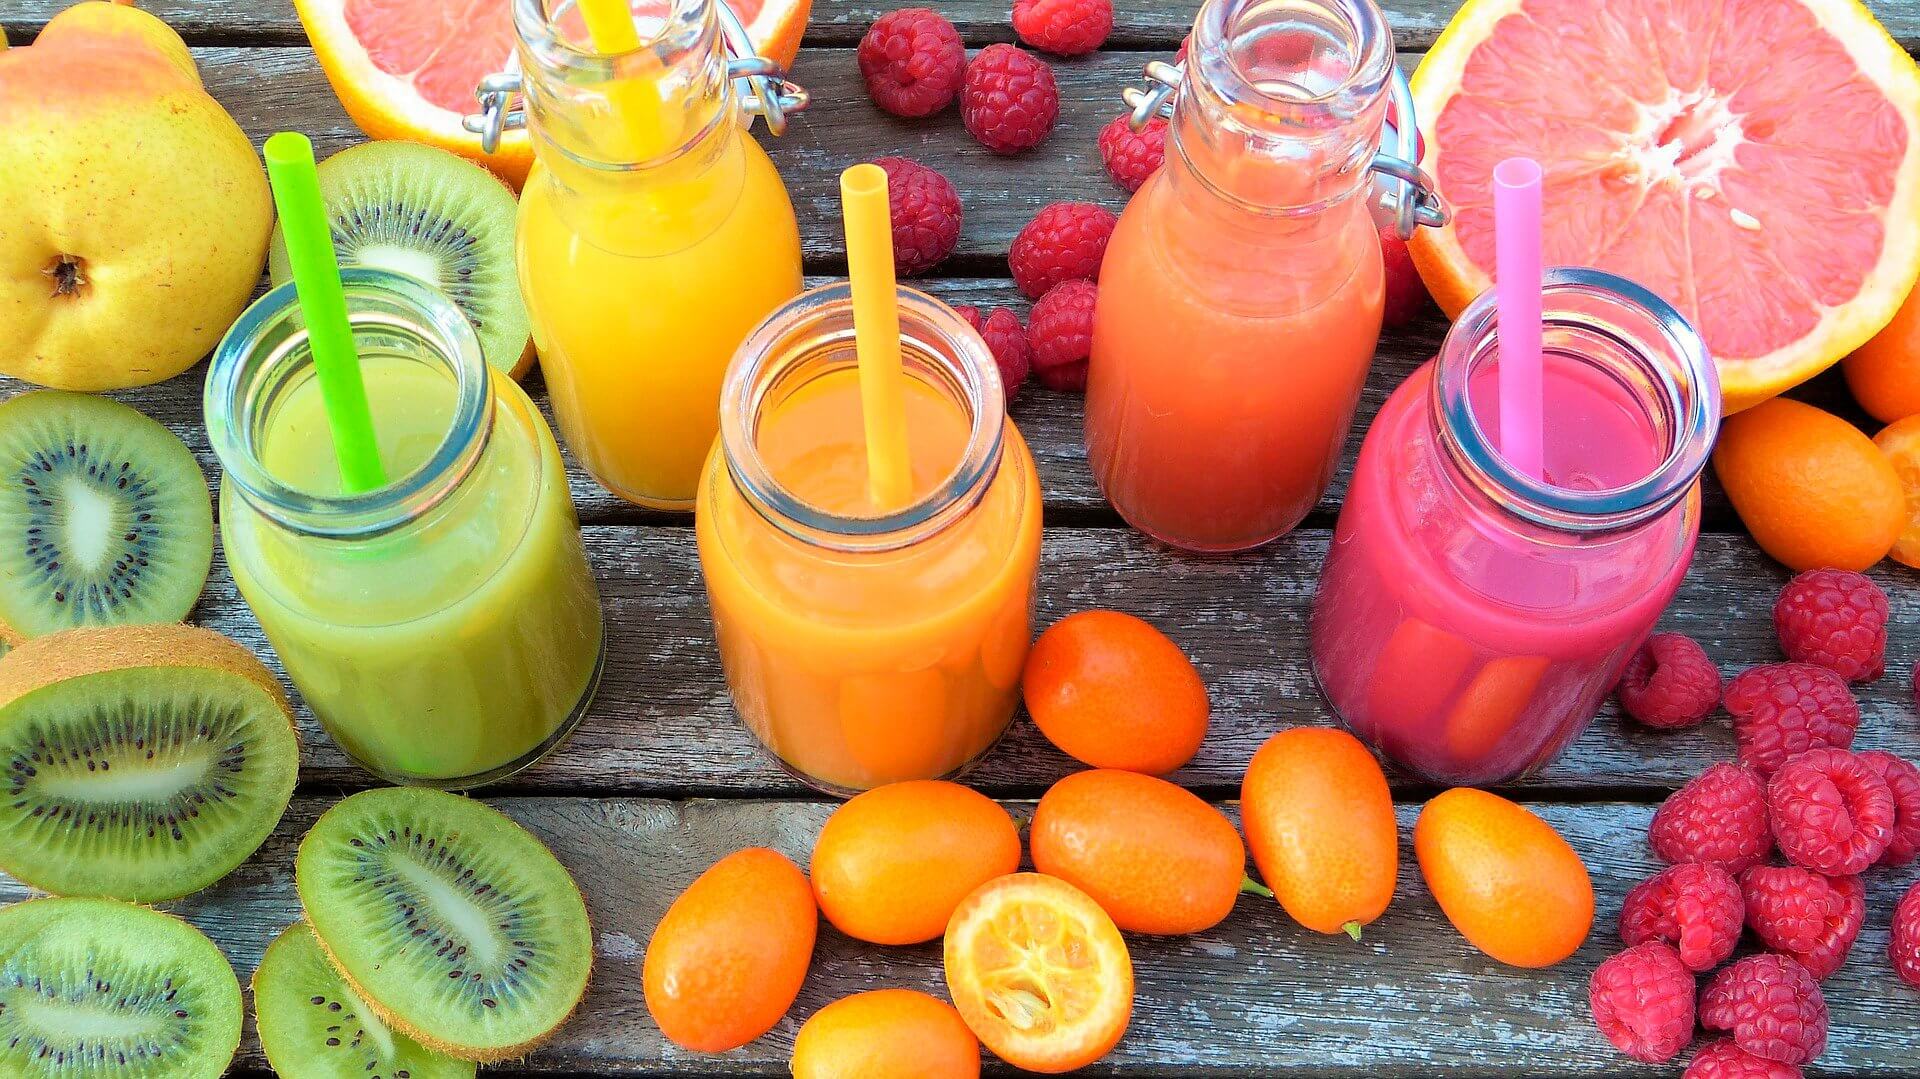 Suco de frutas вреднее outras bebidas açucaradas?